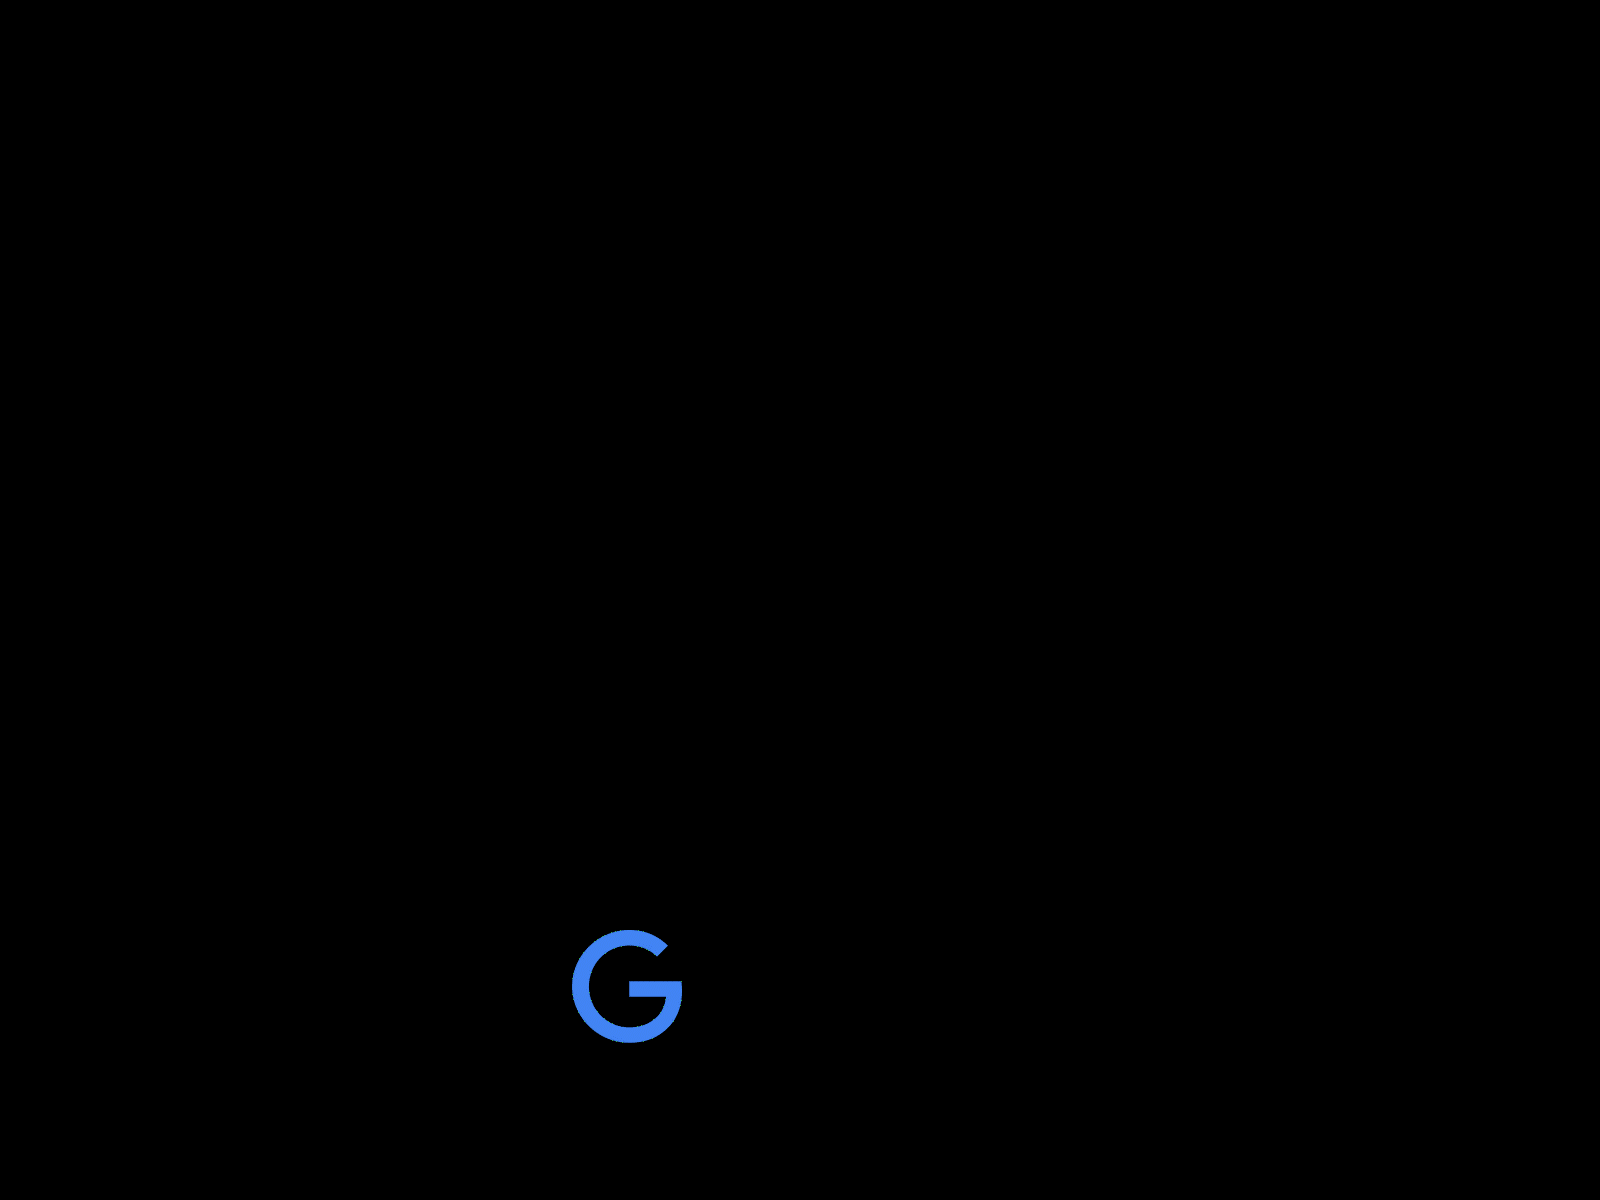 Google logo animation - Practice 01 design google logo logo animation